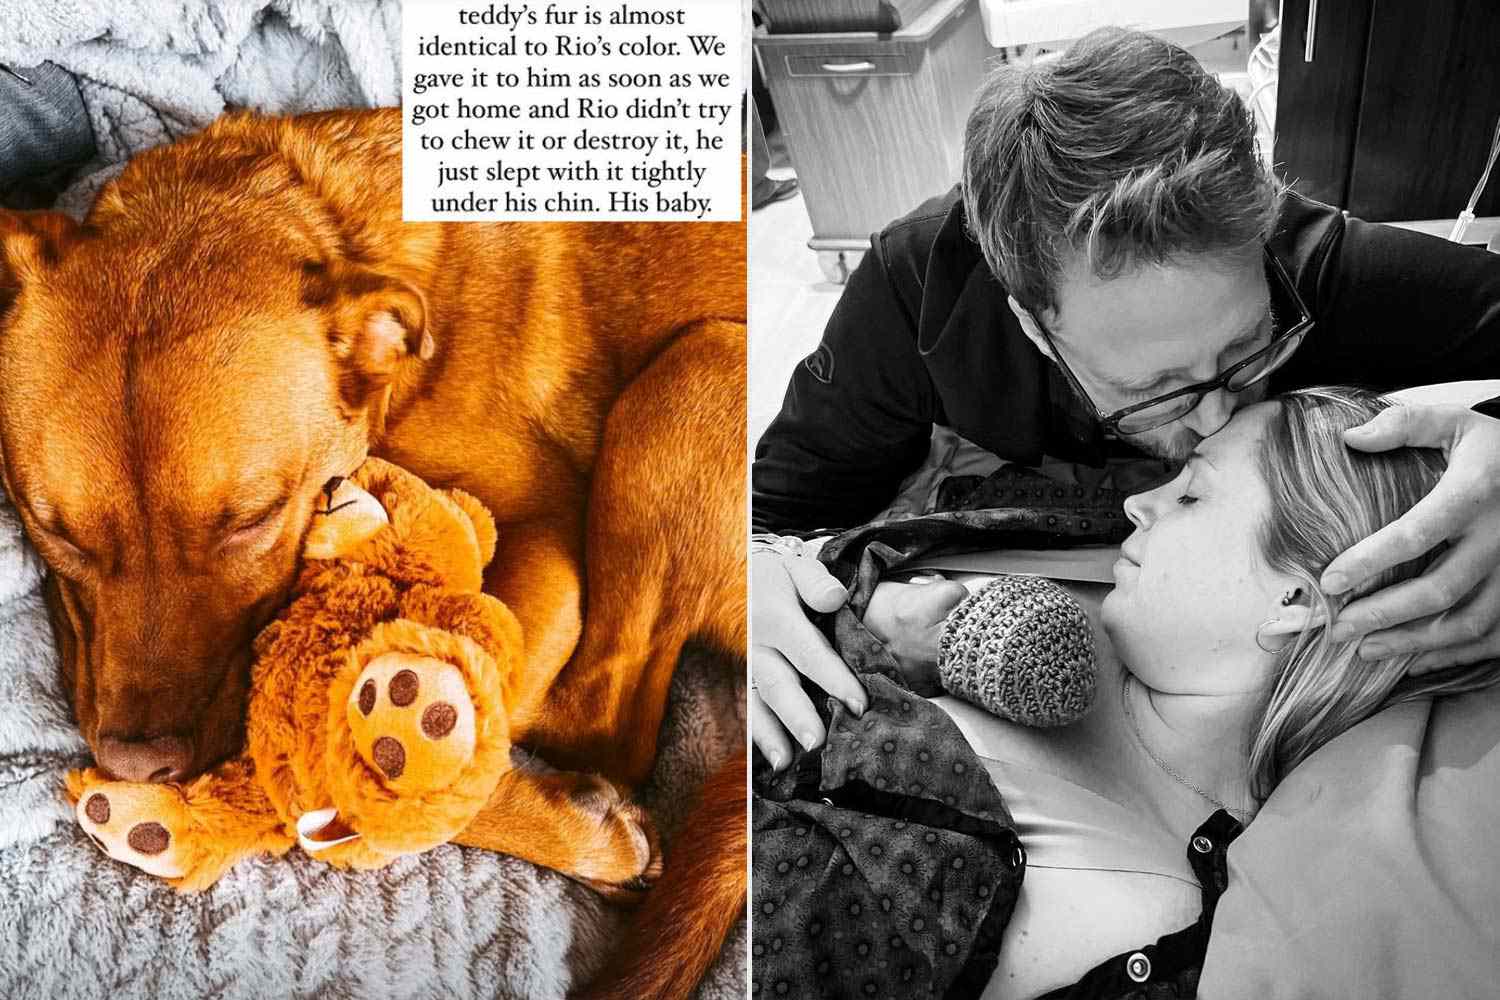 Sarah Herron bringt Stofftier aus dem Stubenwagen des verstorbenen Sohnes mit nach Hause und teilt die süße Reaktion des Hundes